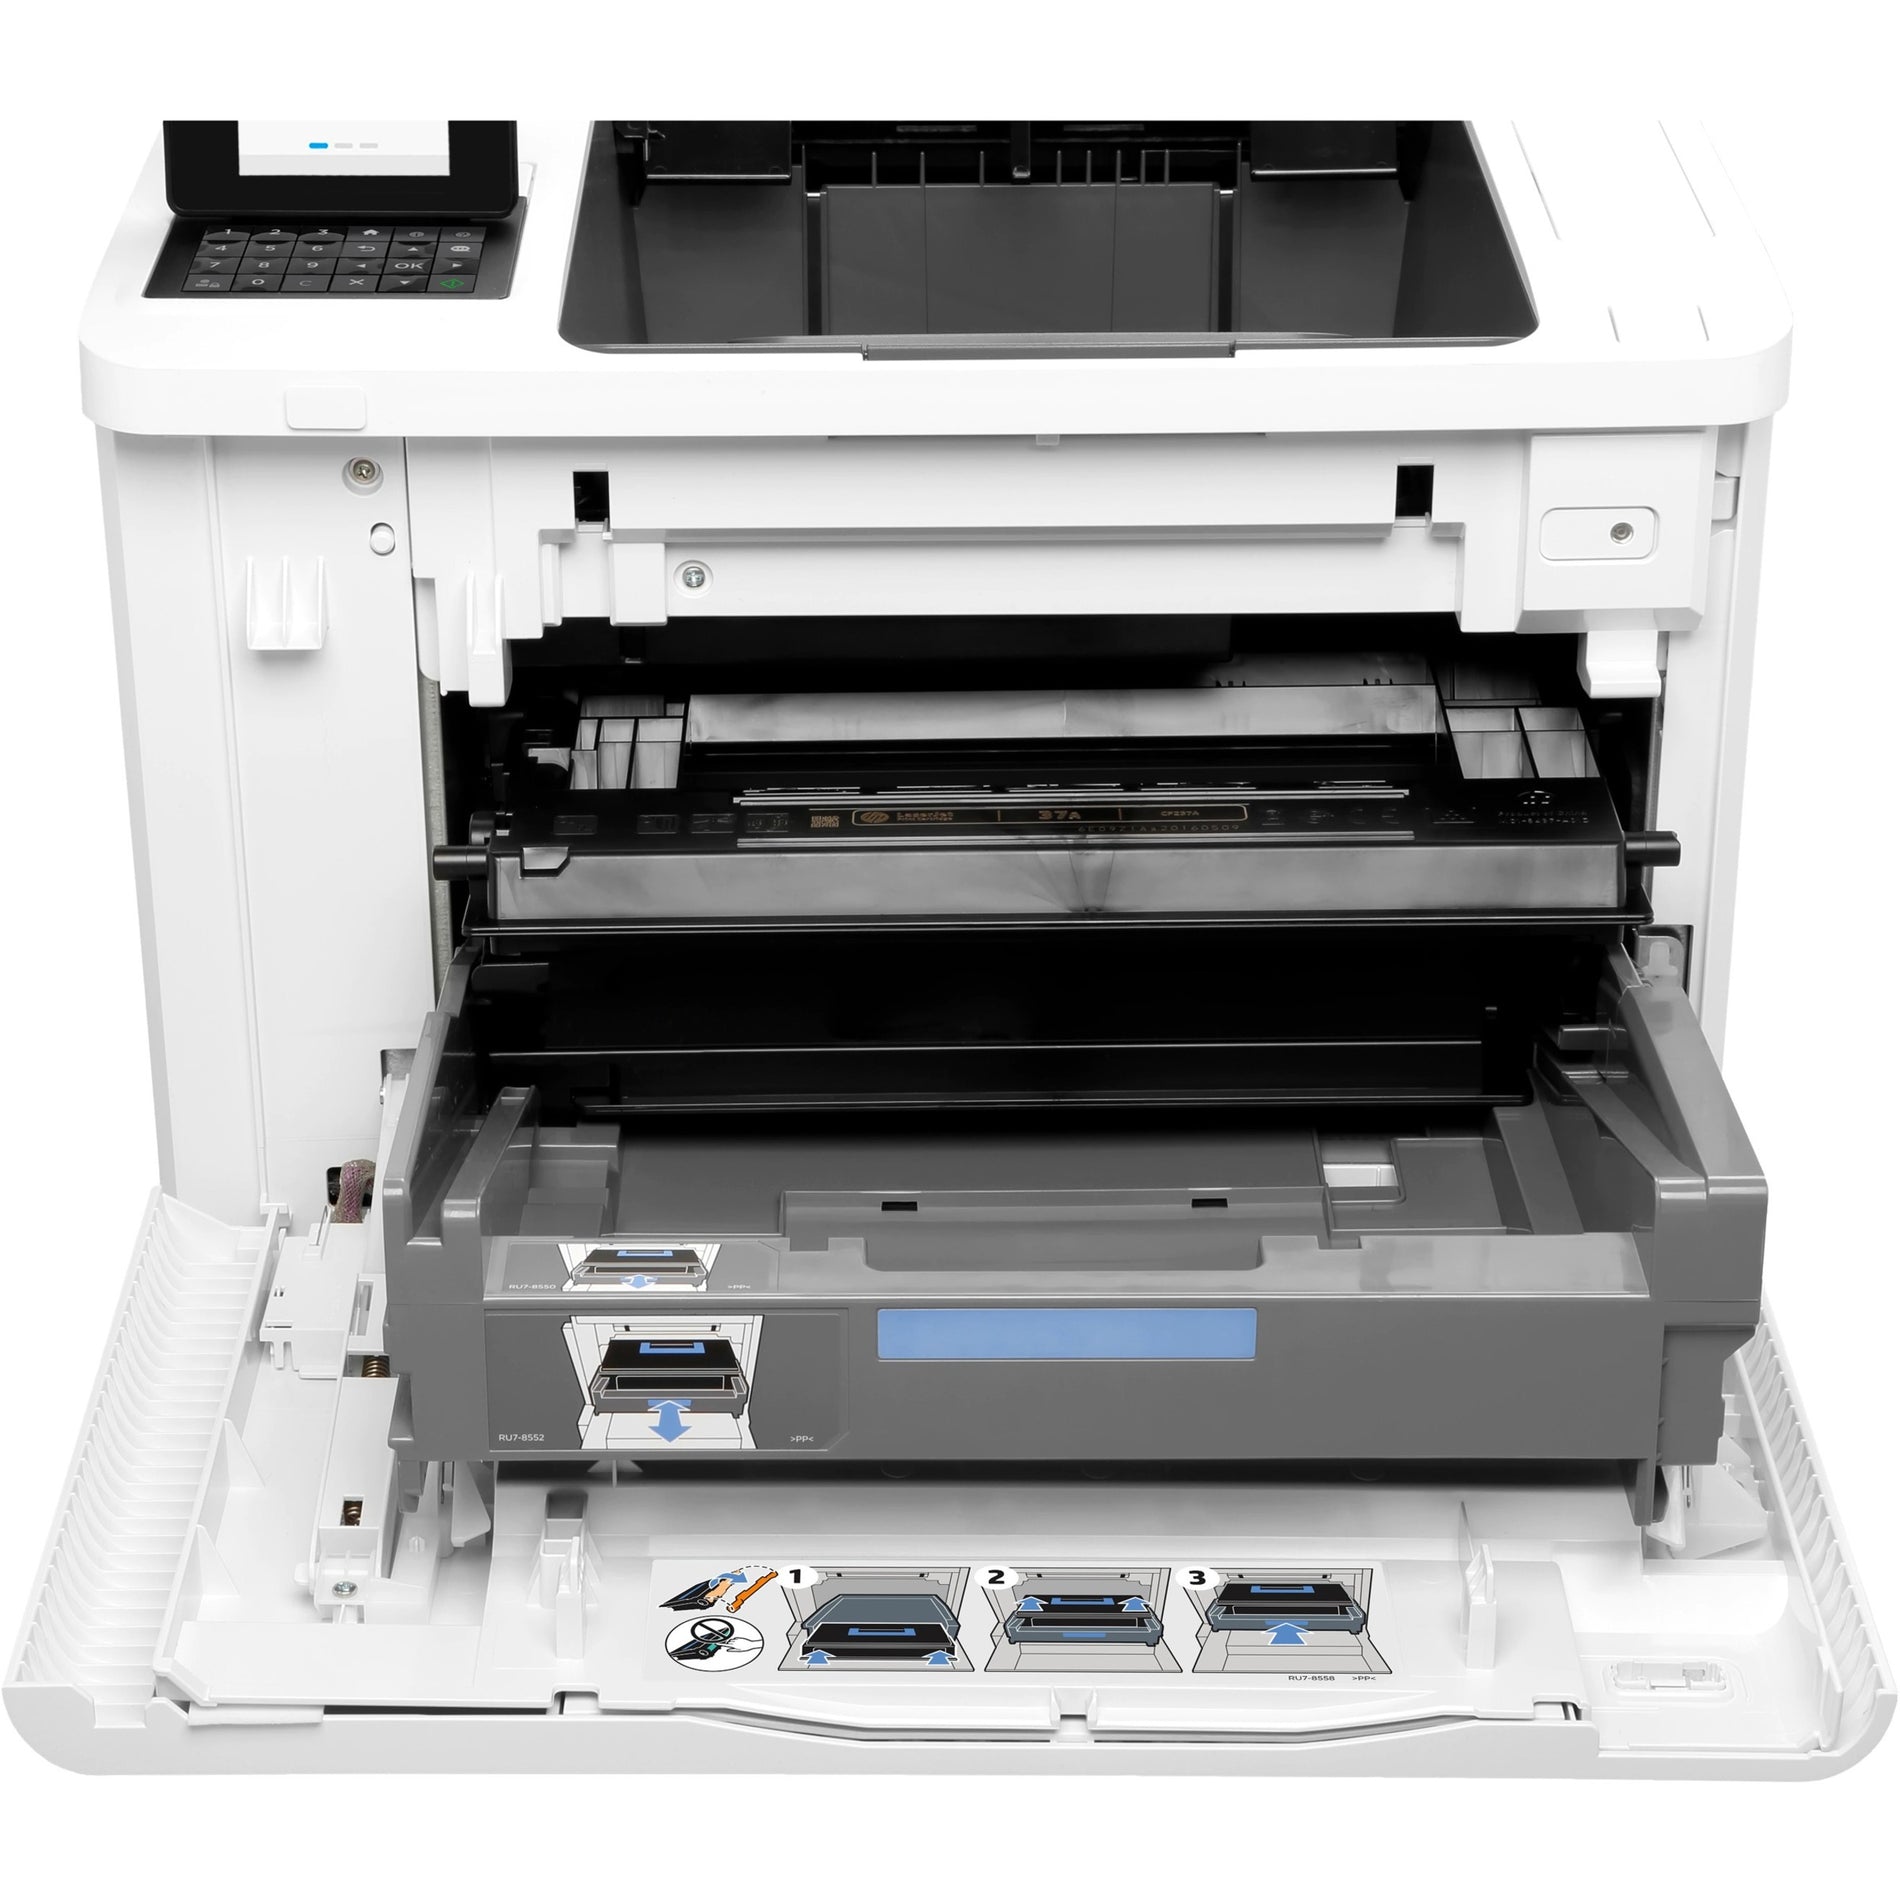 HP LaserJet M608 M608n Desktop Laser Printer - Monochrome (K0Q17A#BGJ)